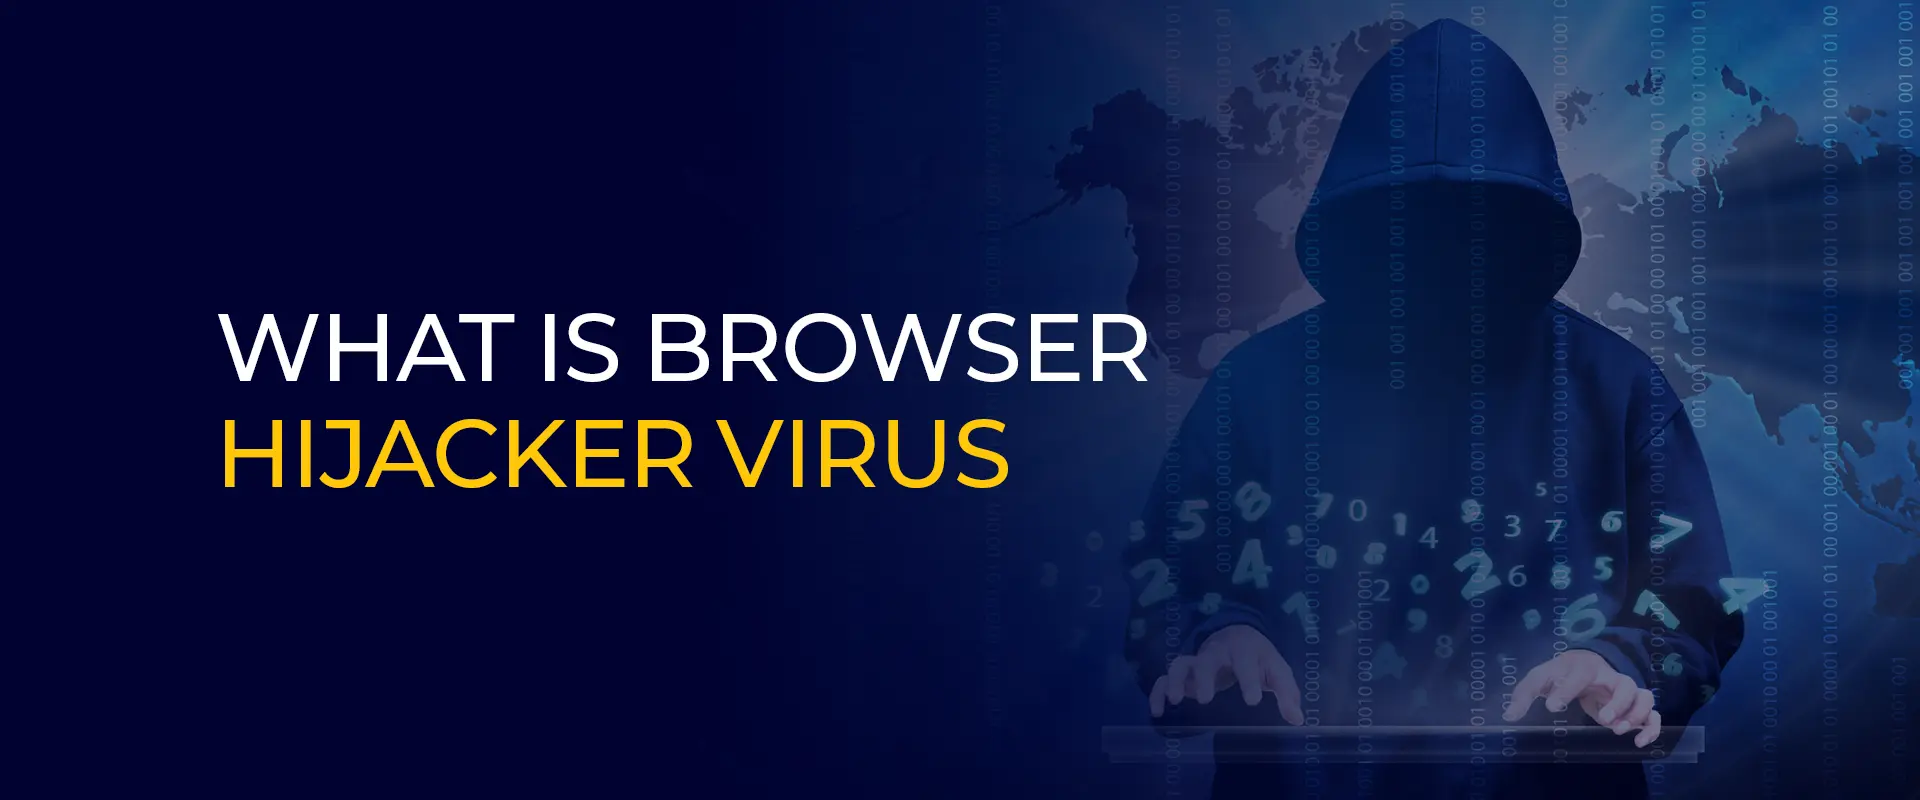 Wat ass Browser Hijacker Virus 900